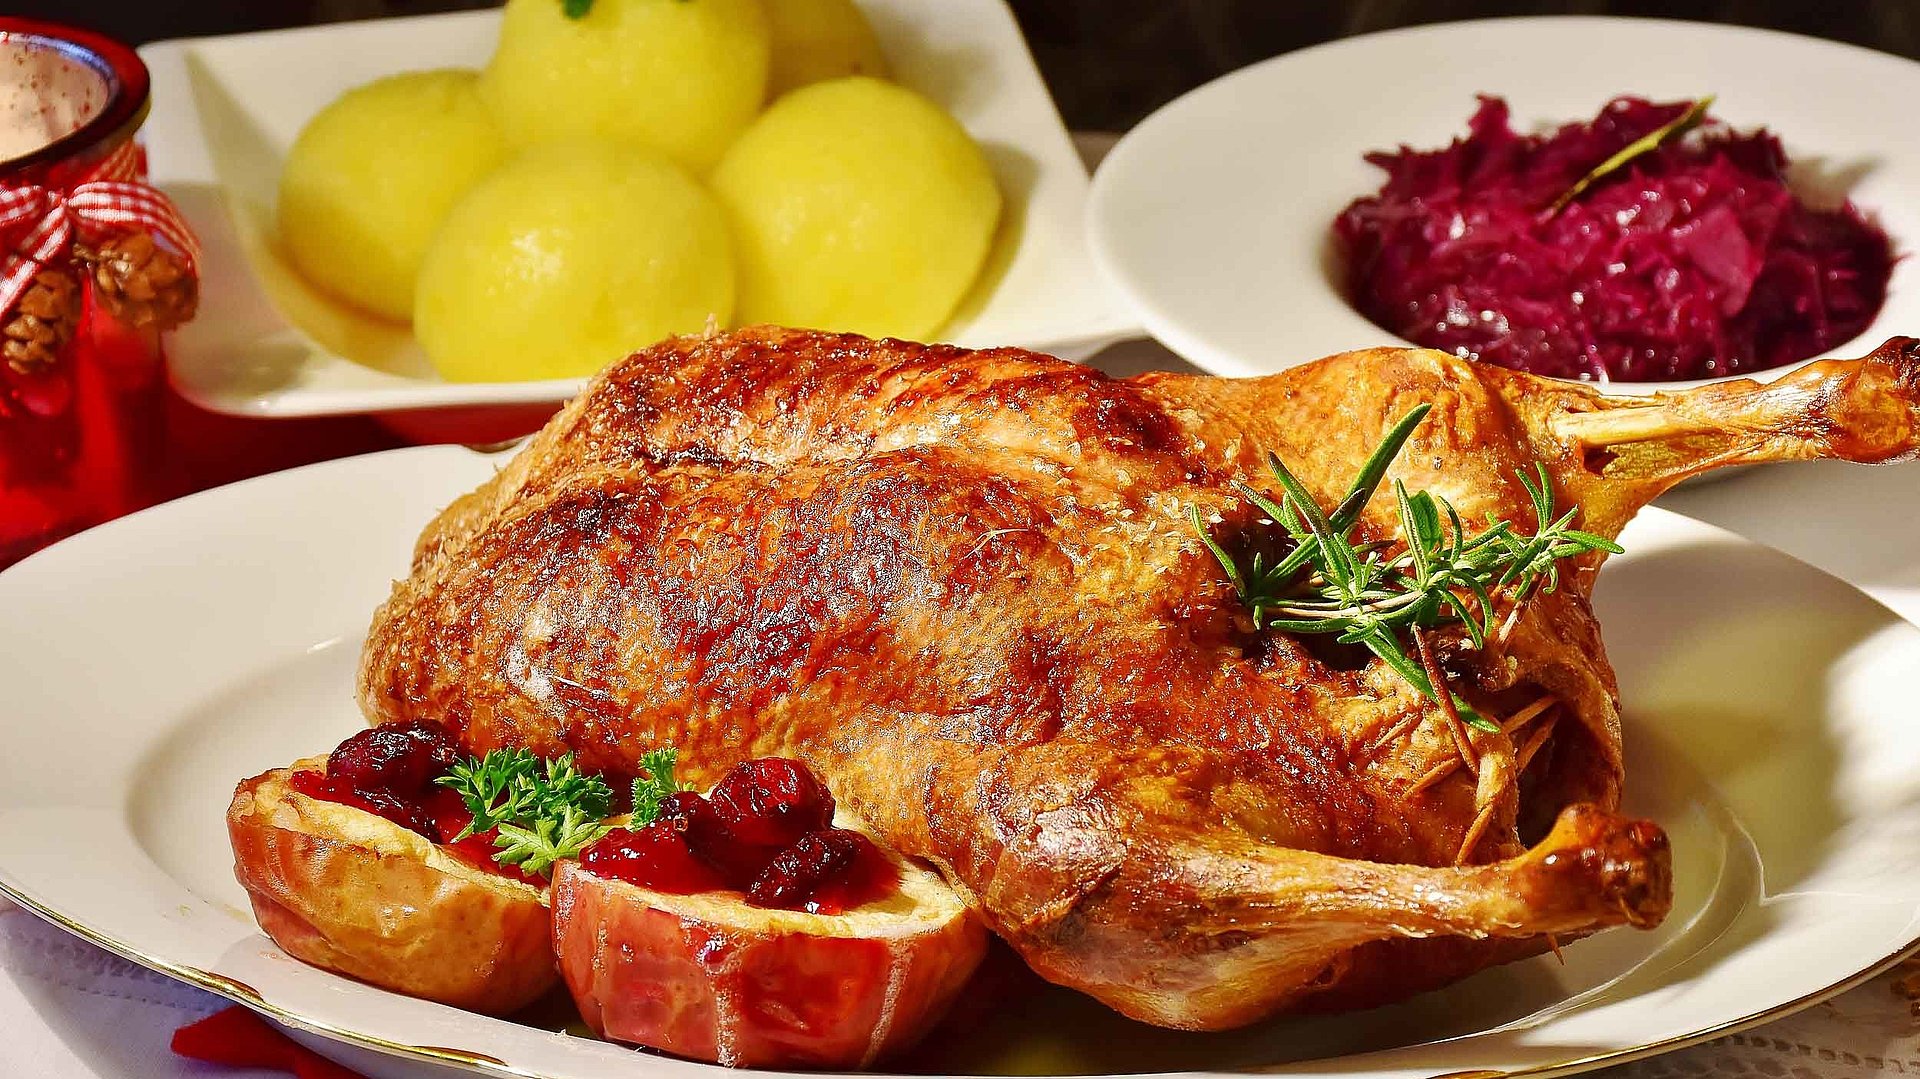 Gastronomie im Ostallgäu - Teller mit frischer Ente und separaten Tellern jeweils mit Knödeln und Rotkohl